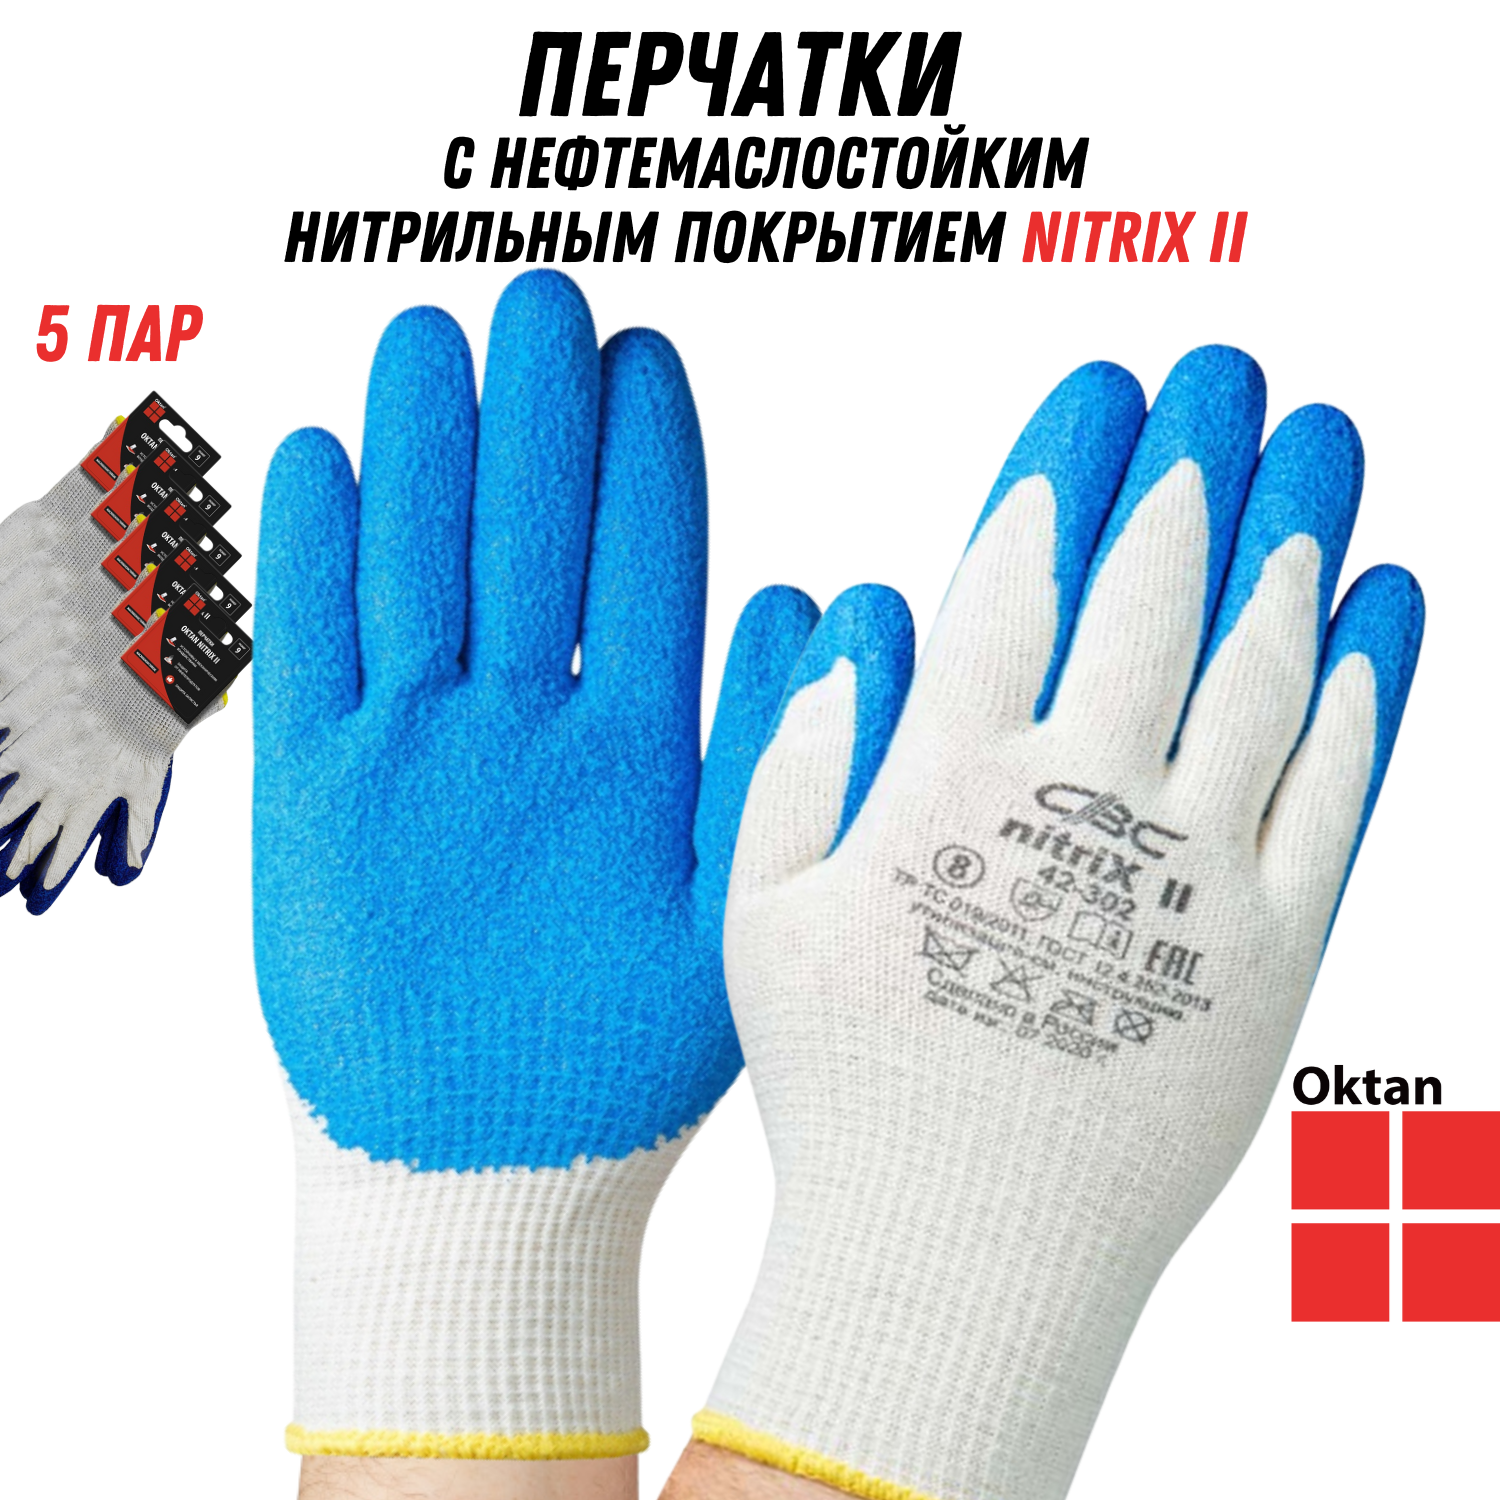 Перчатки рабочие Oktan NITRIX II А5-01-21-05-ММ белые с синим размер 9, 5 пар комплект садовой мебели lf бежевый с синим из 4 предметов